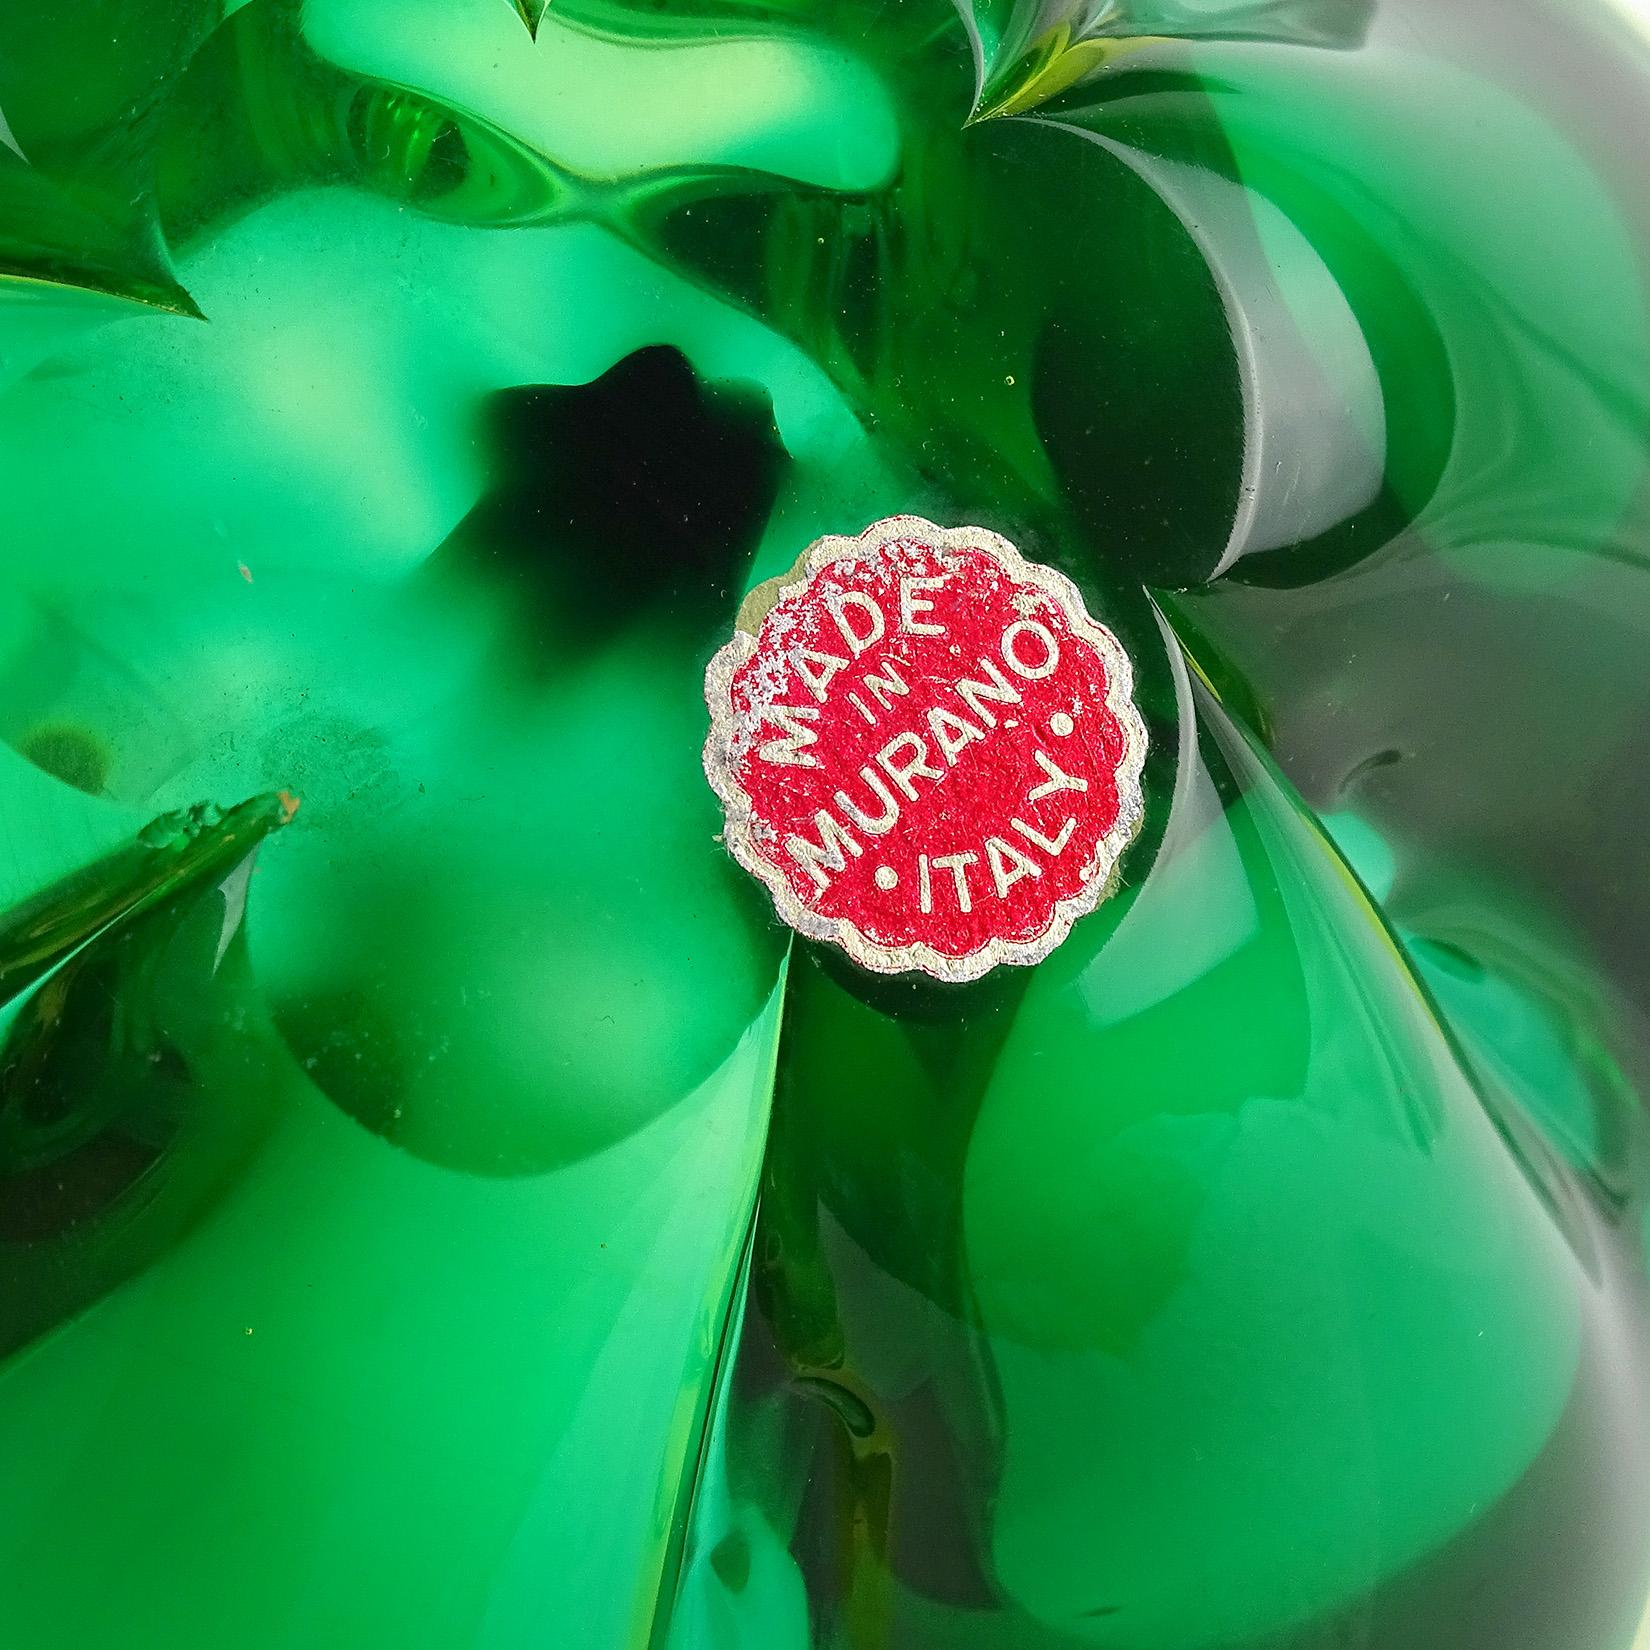 Seguso Murano Sommerso Green Glowing Uranium Italian Art Glass Lotus Flower Bowl 1